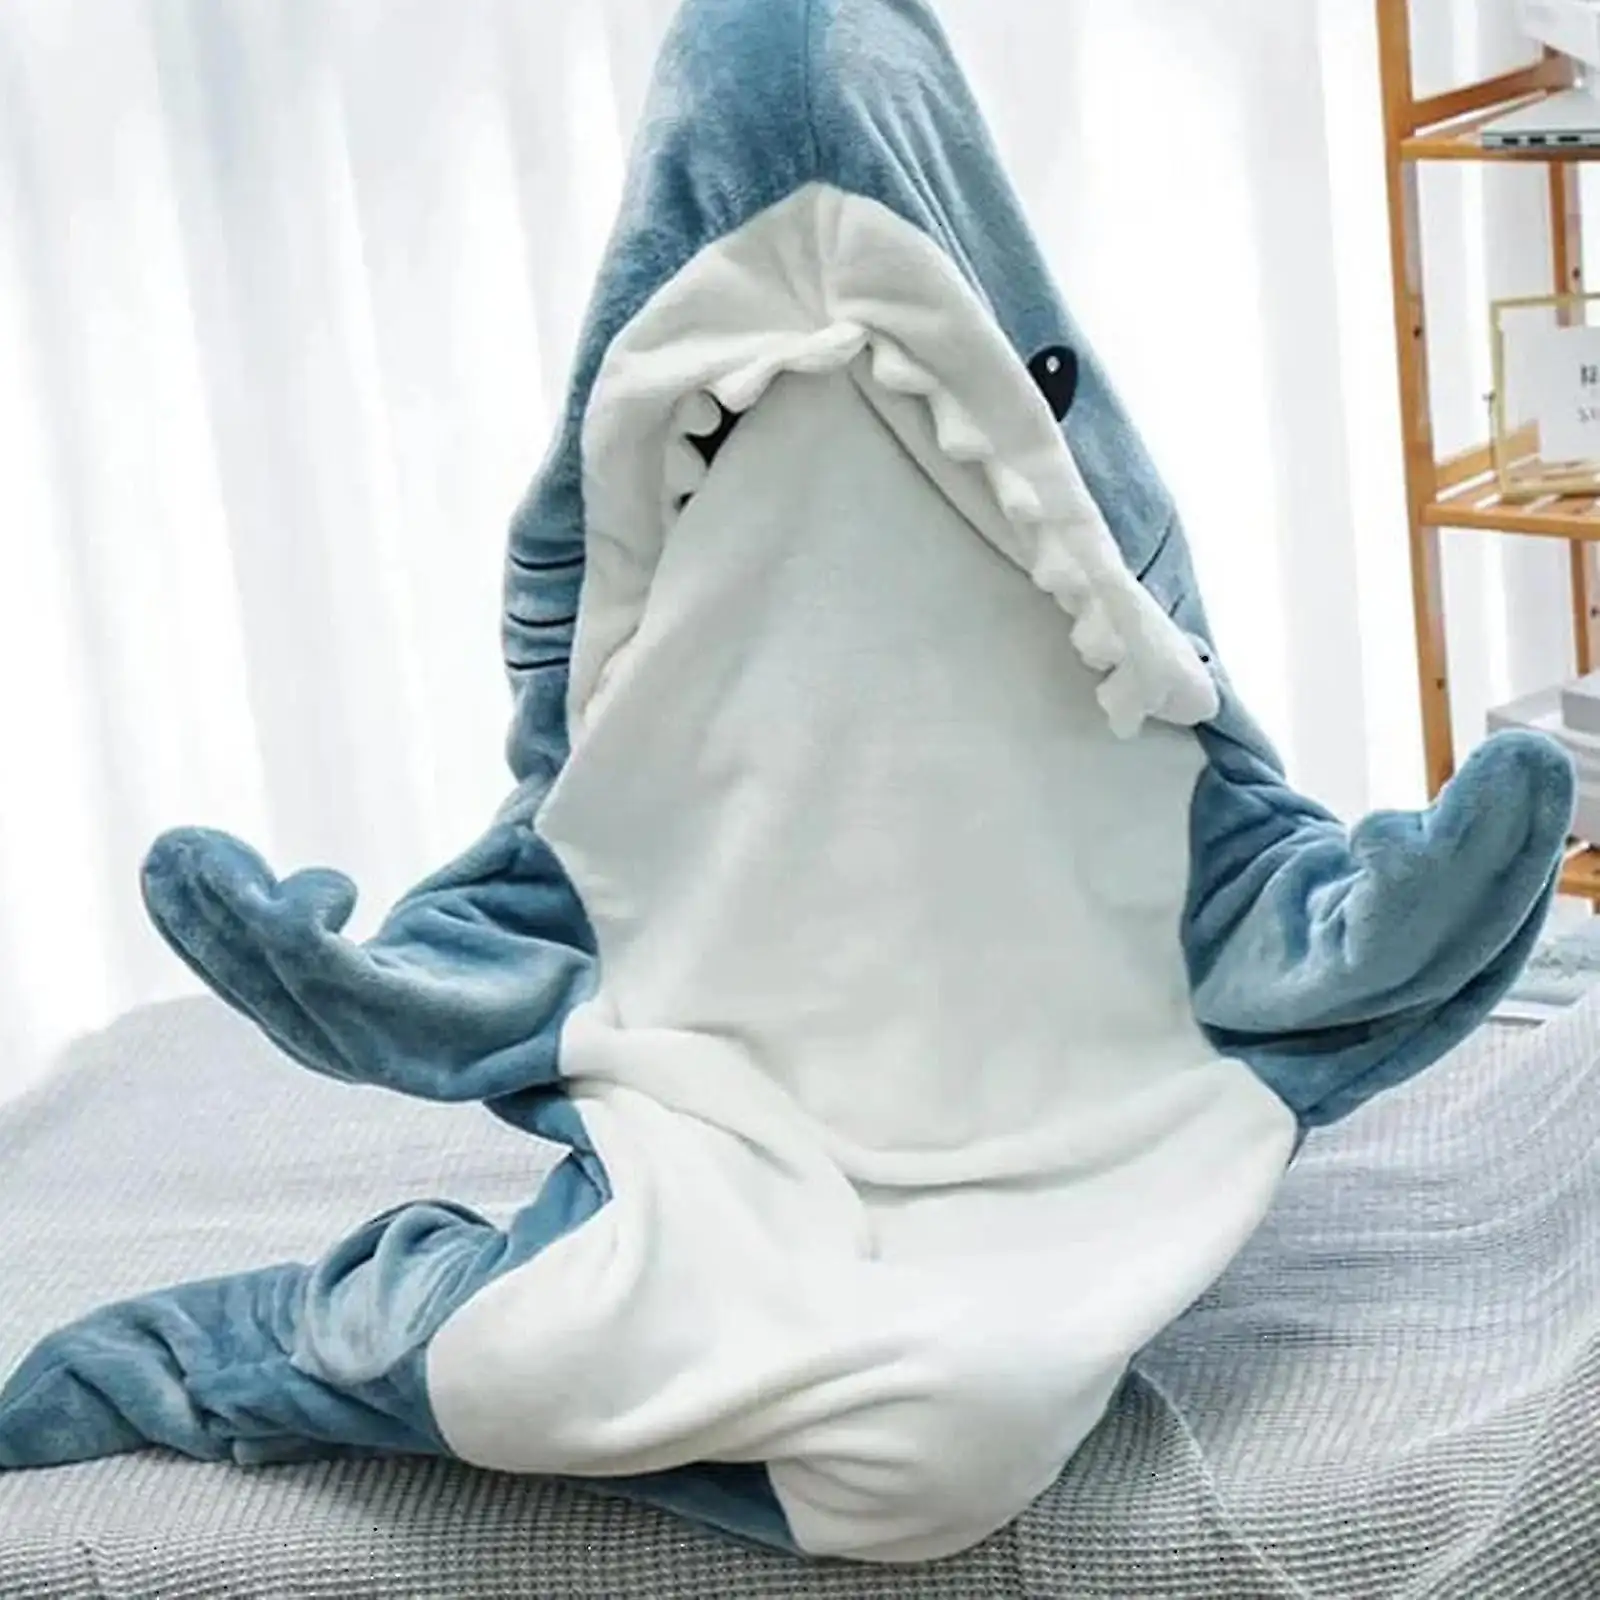 Shark Blanket Hoodie Adult Onesies Adult Wearable Blanket - Shark Blanket Super Soft Comfort Flannel Hoodie Shark Sleeping Bag